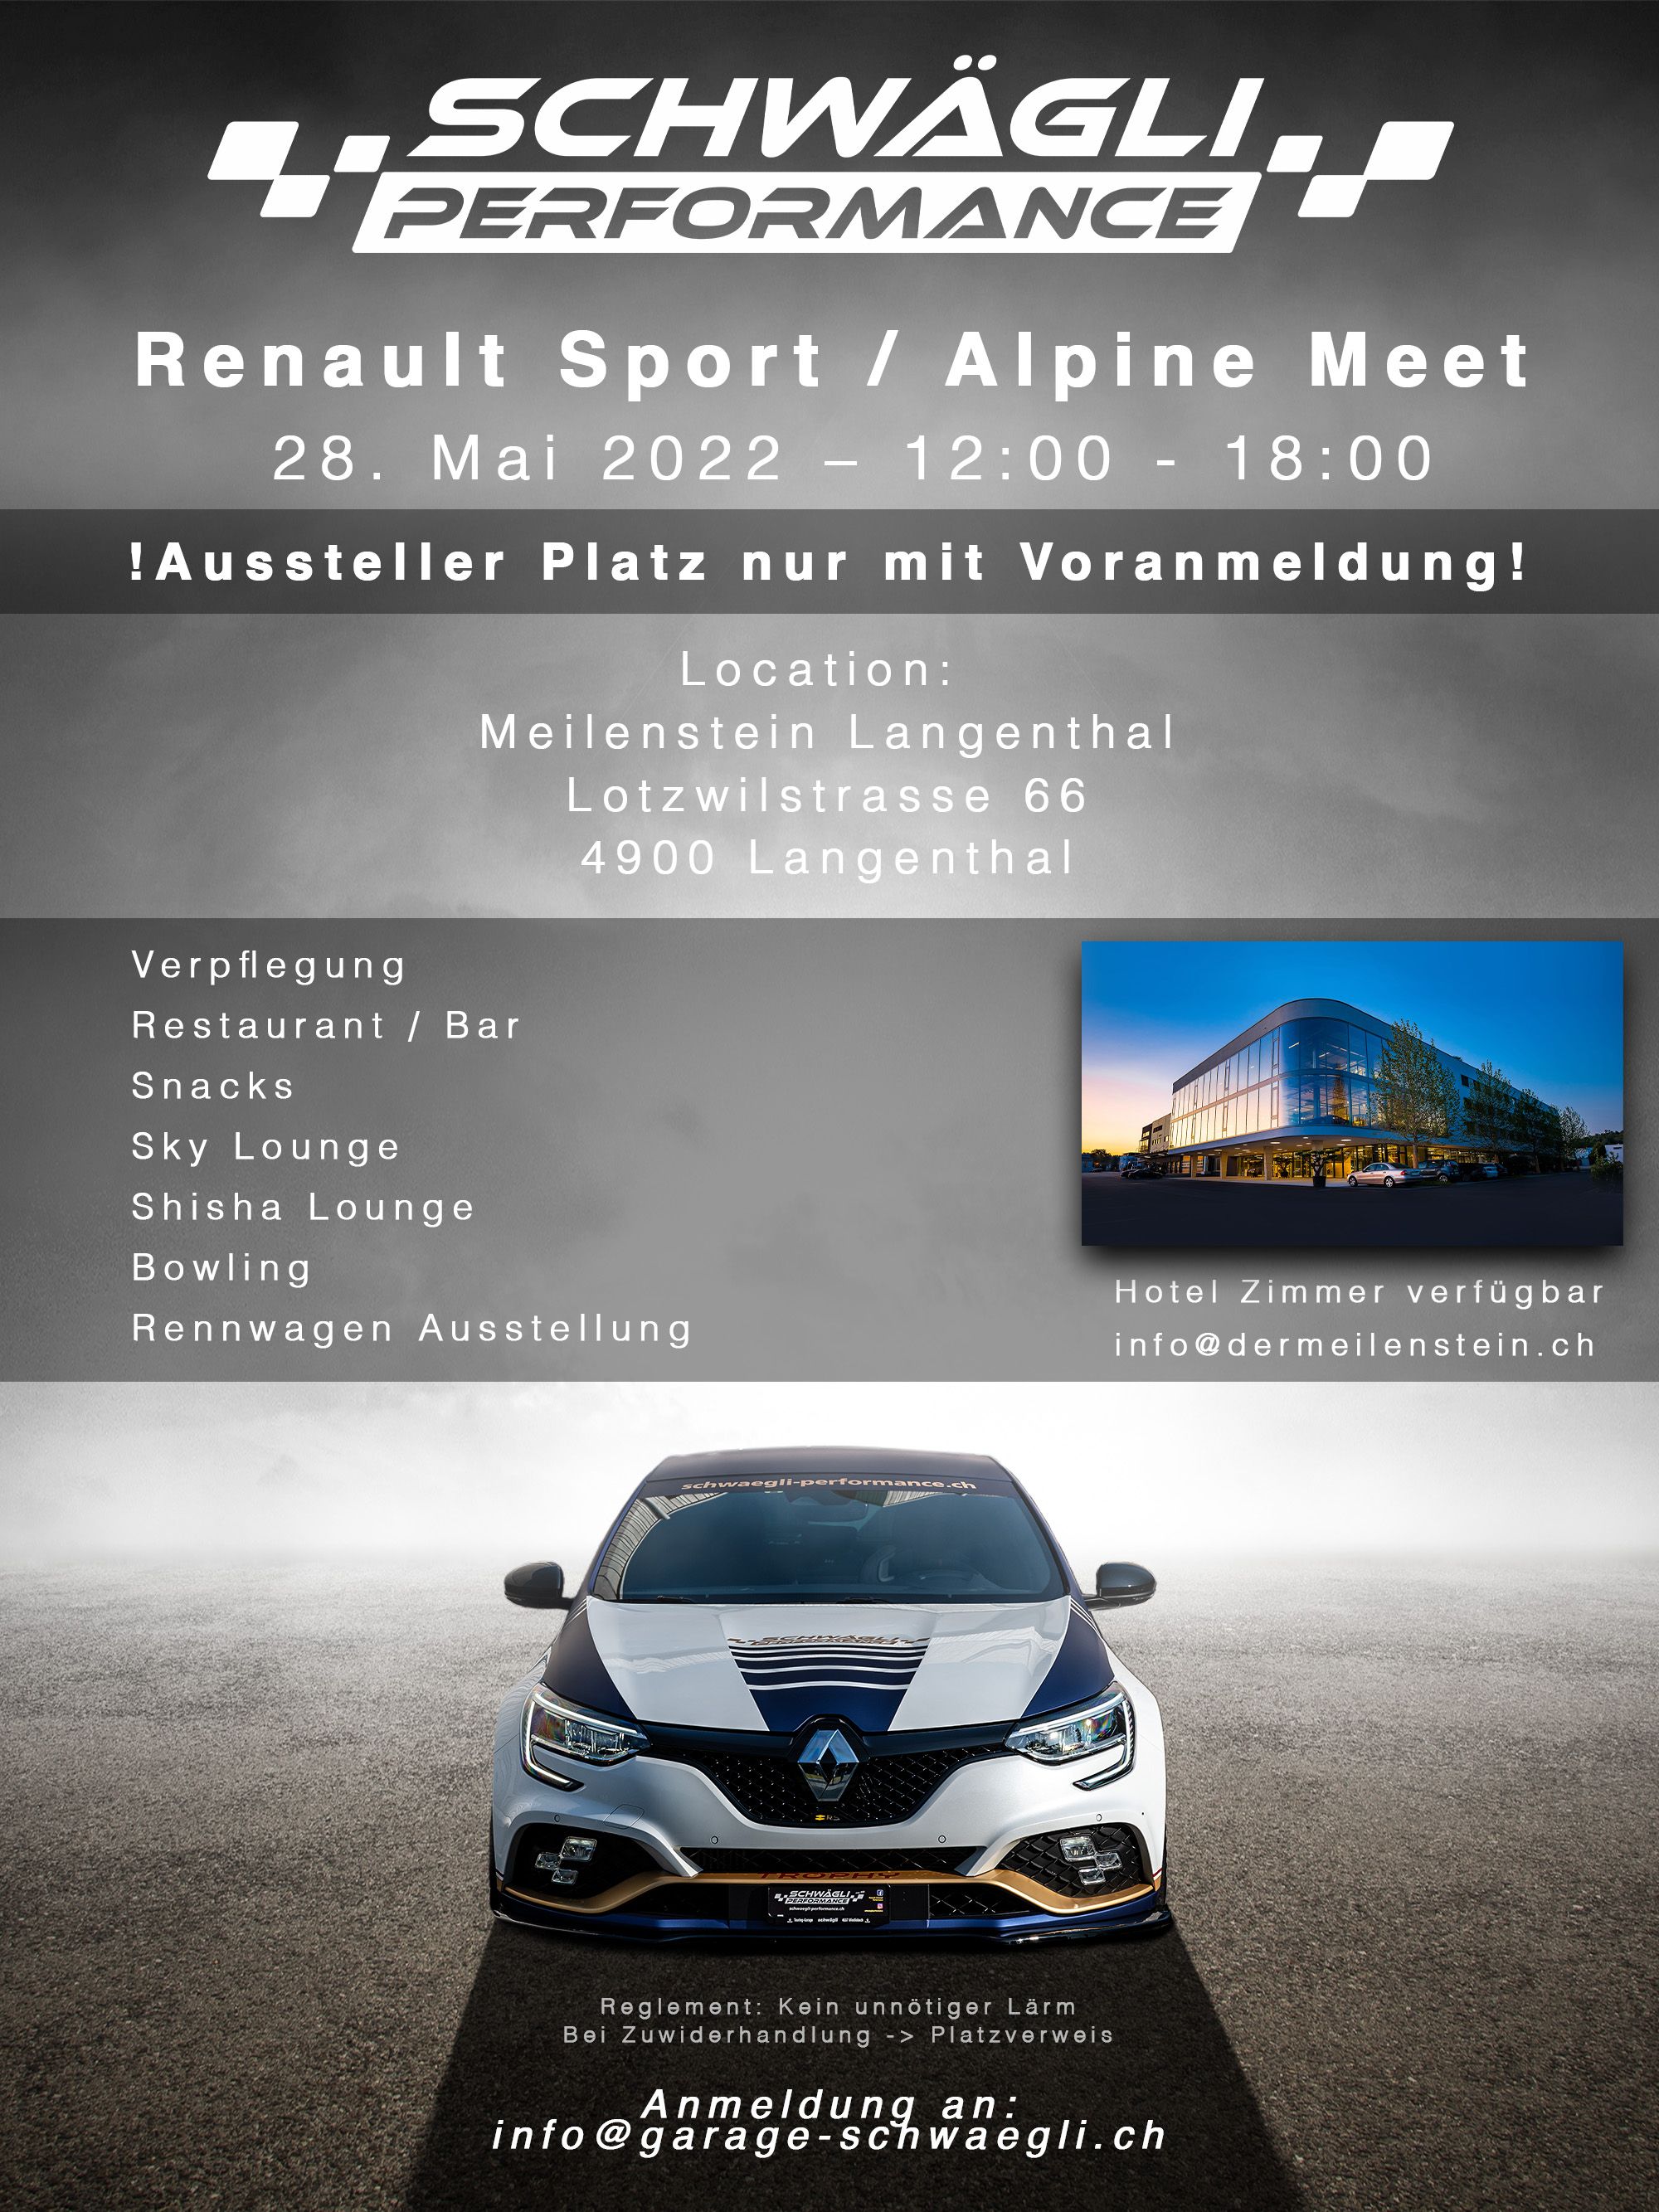 Renault Sport & Alpine Meet